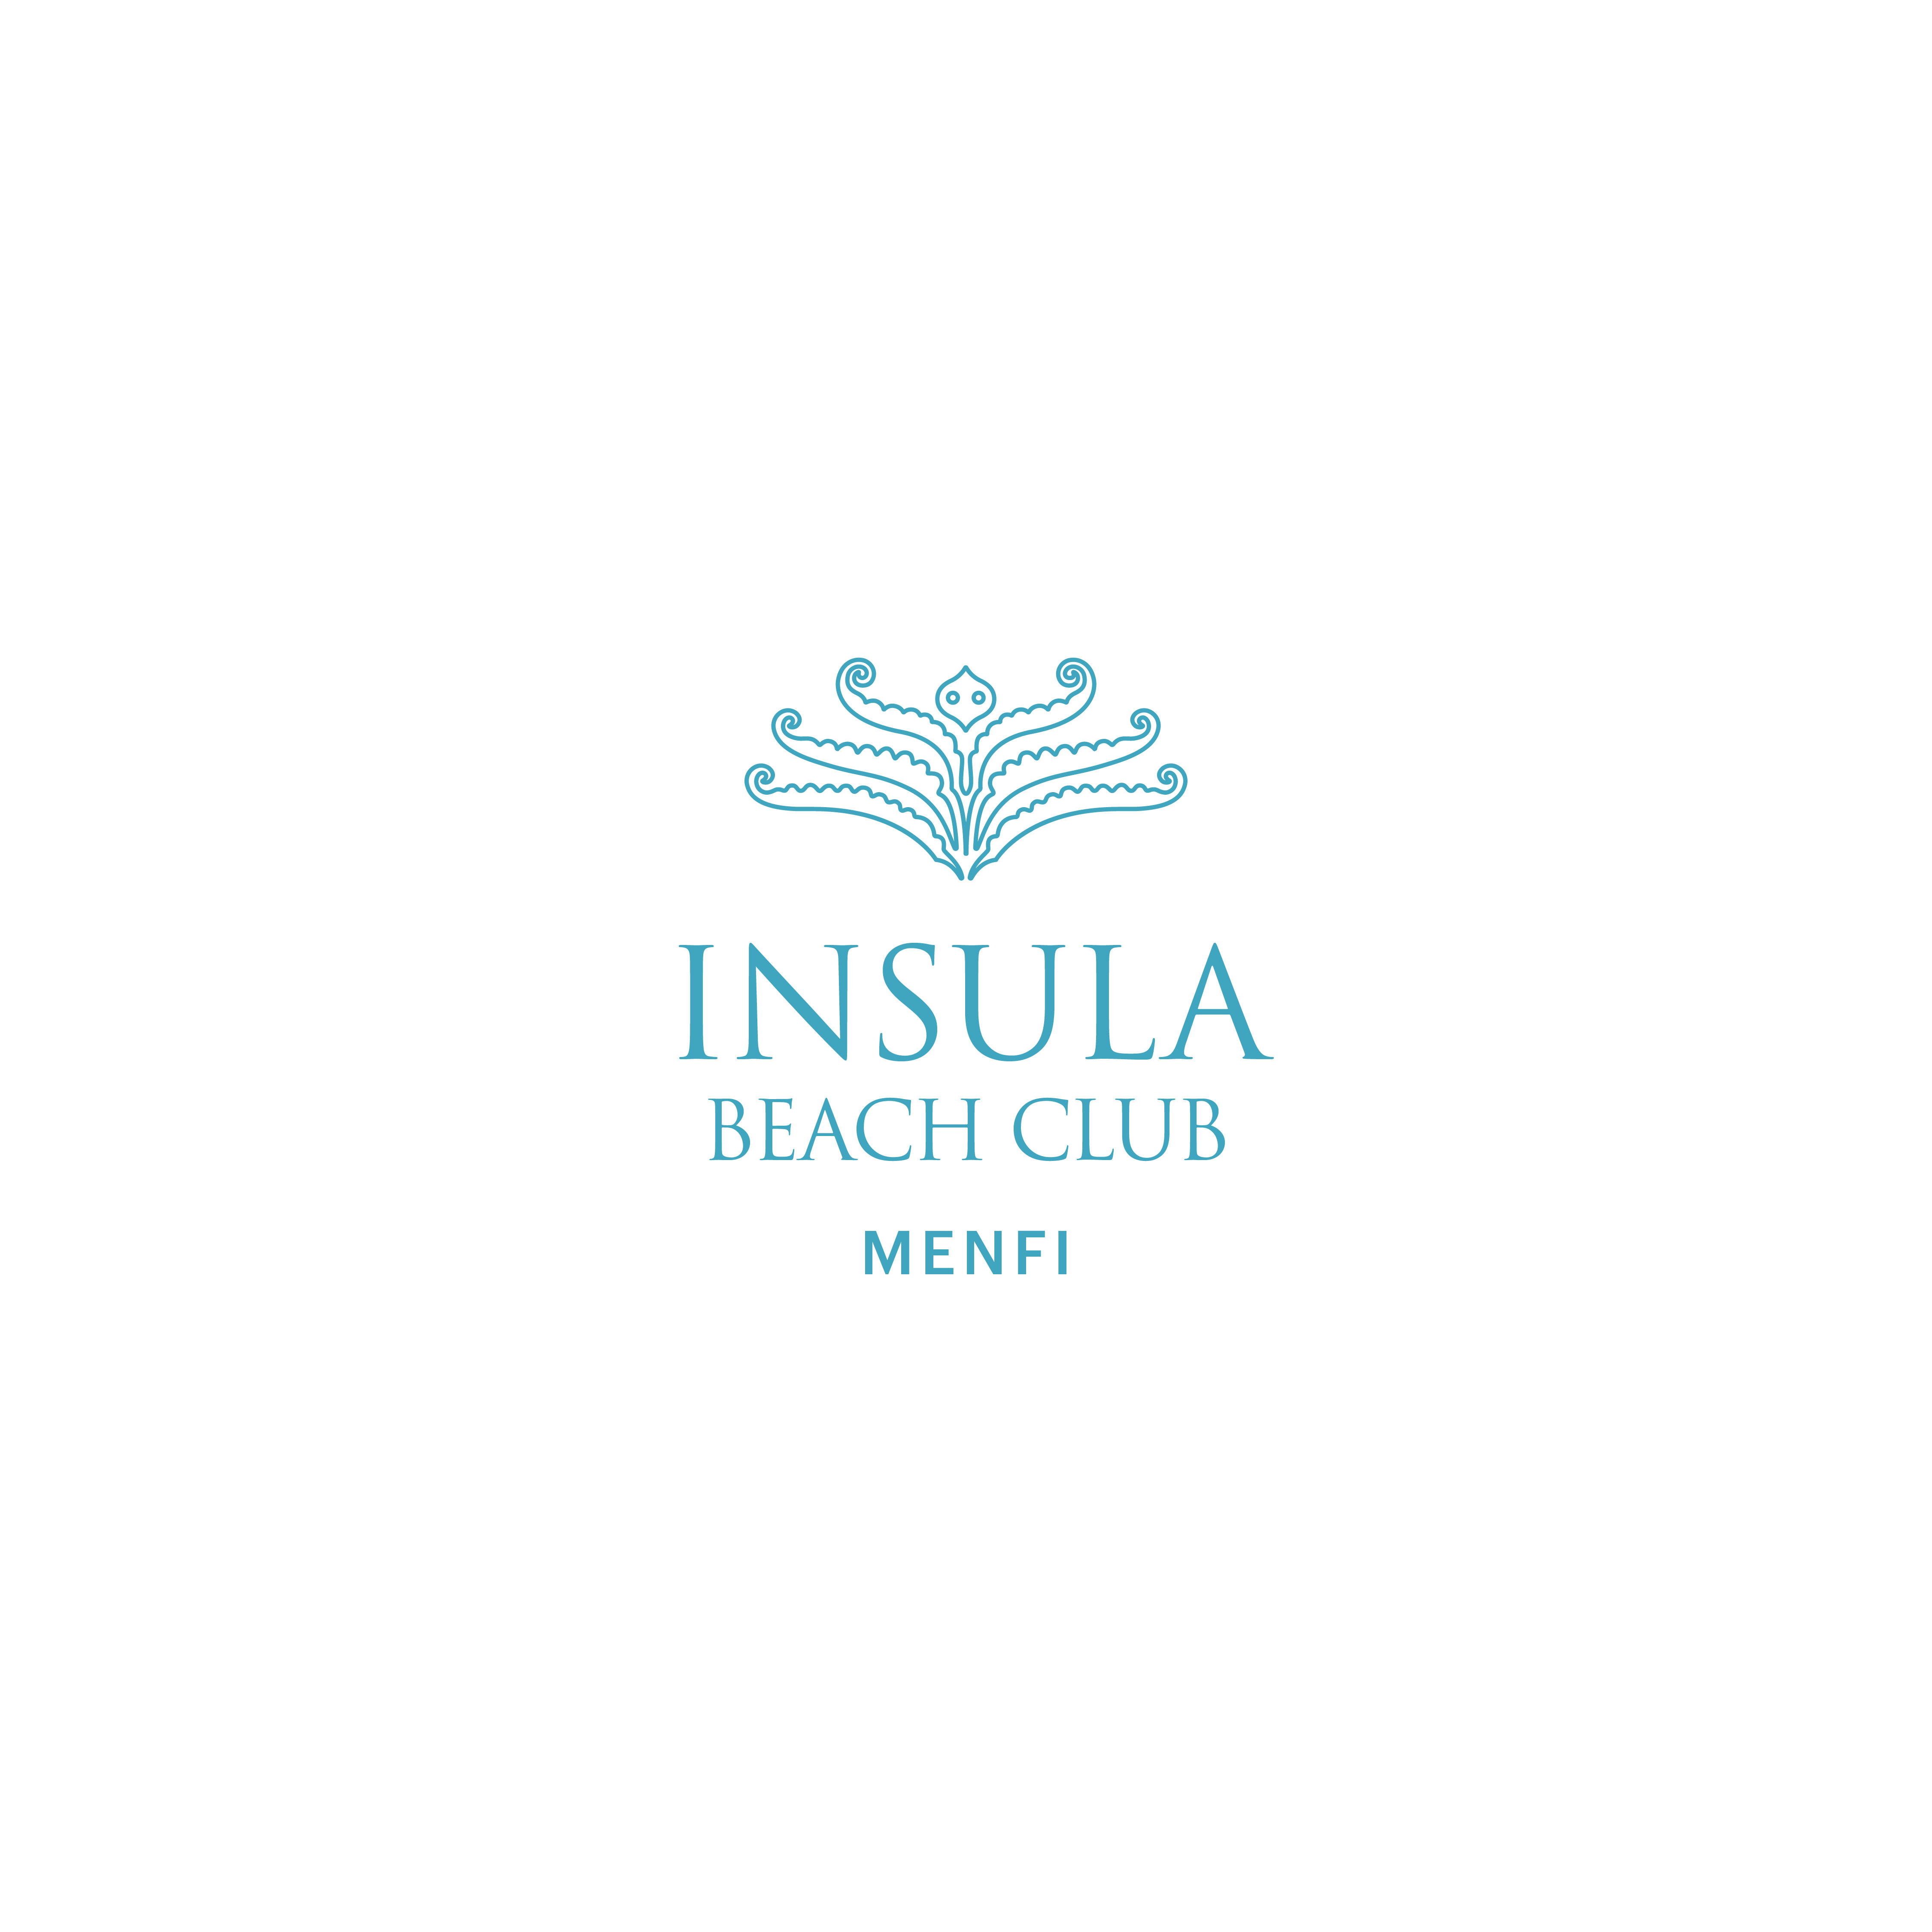 INSULA - BEACH CLUB - MENFI